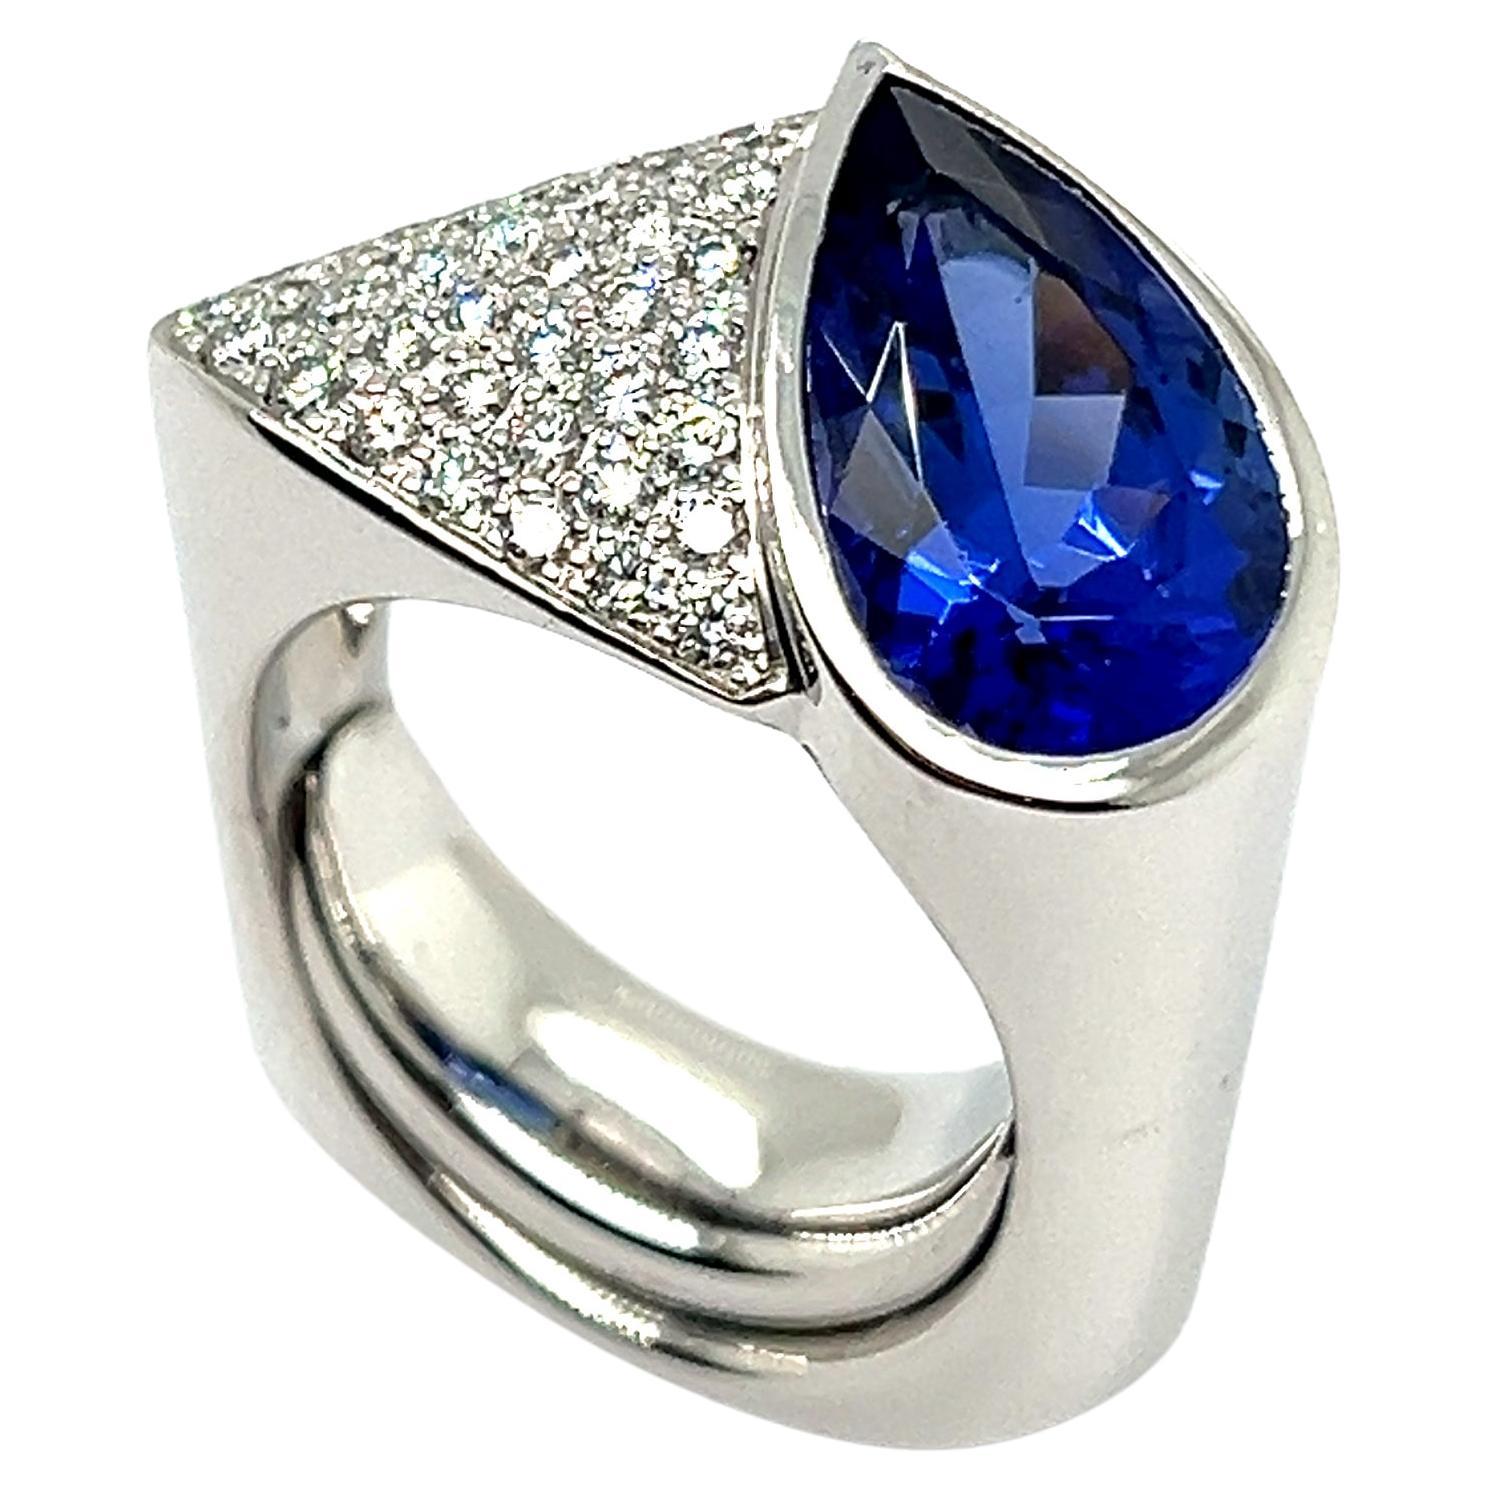 Ring with Tanzanite & Diamonds in 18 Karat White Gold